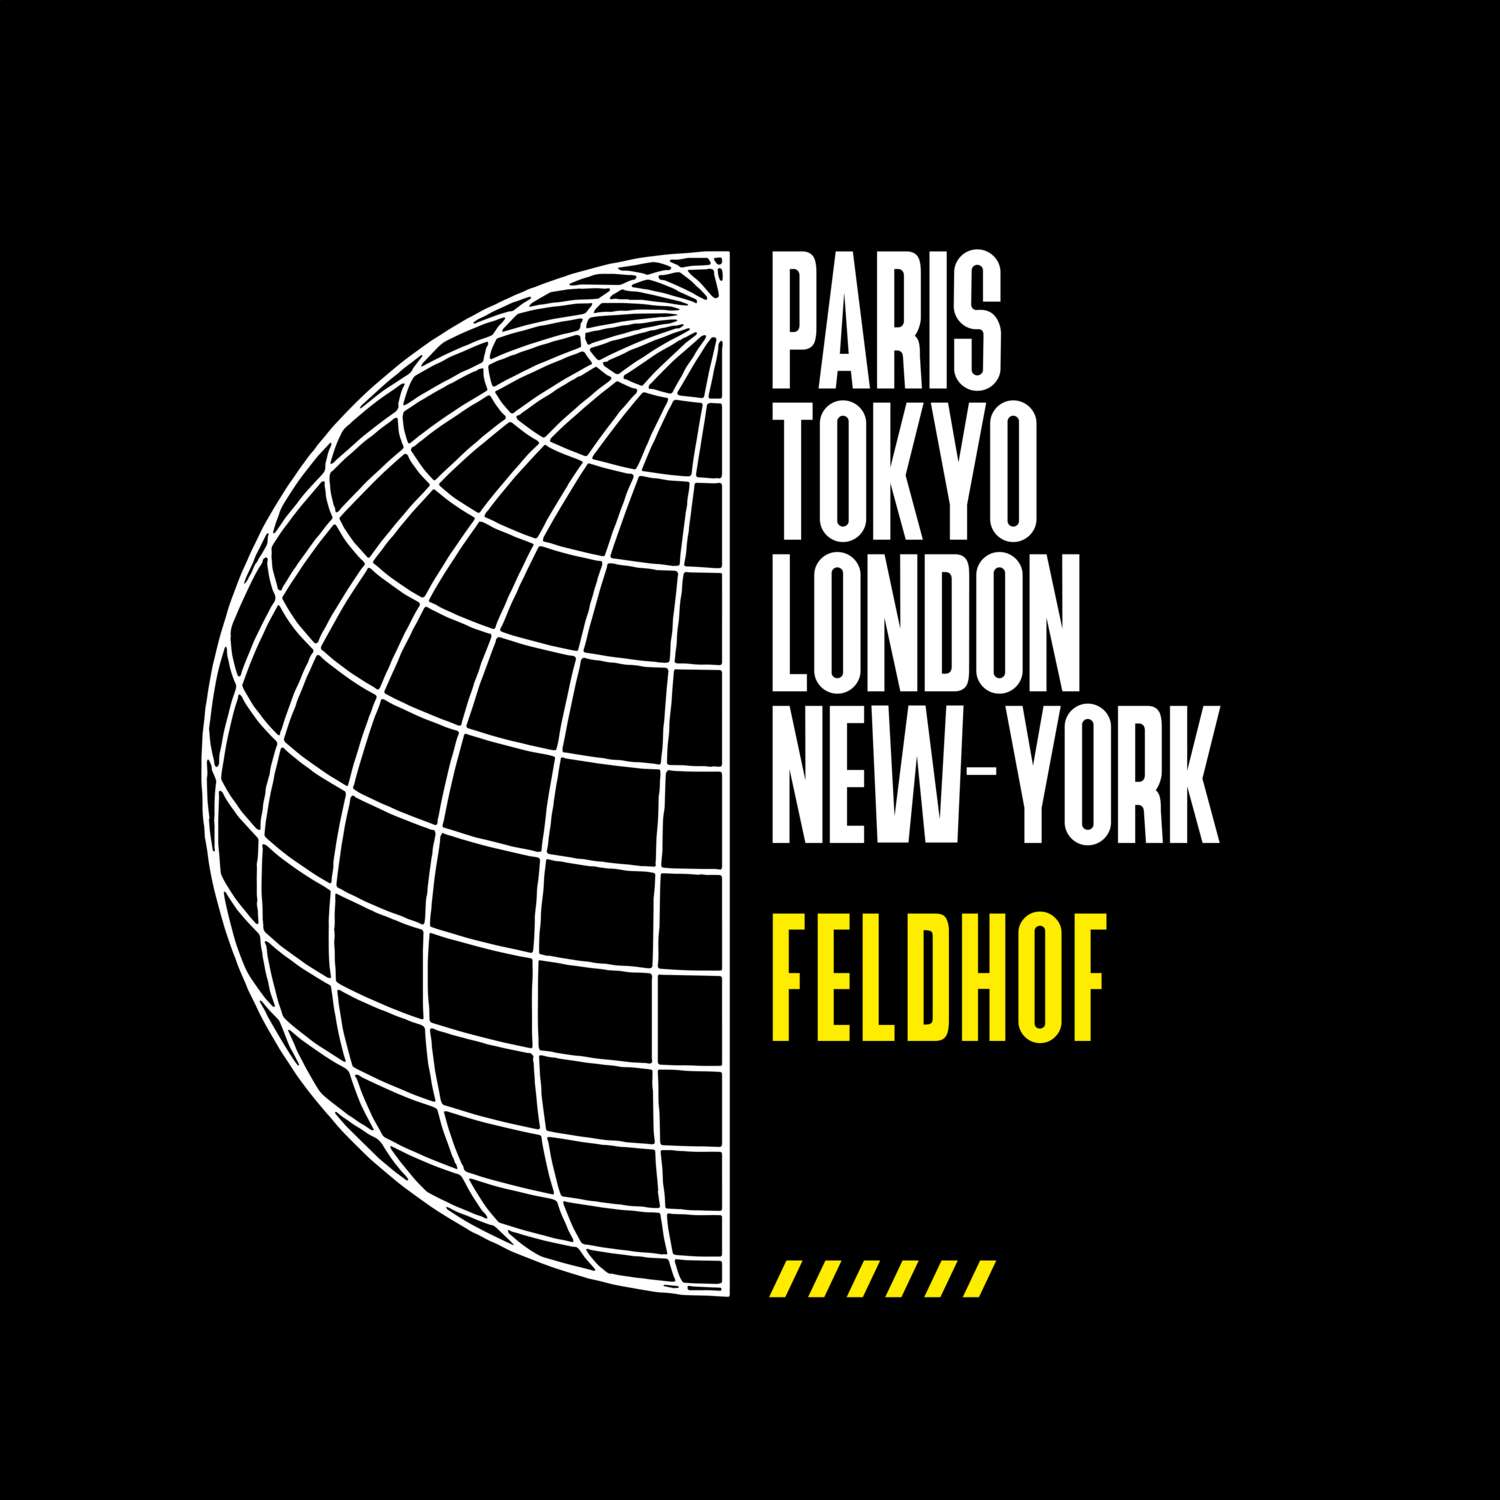 Feldhof T-Shirt »Paris Tokyo London«